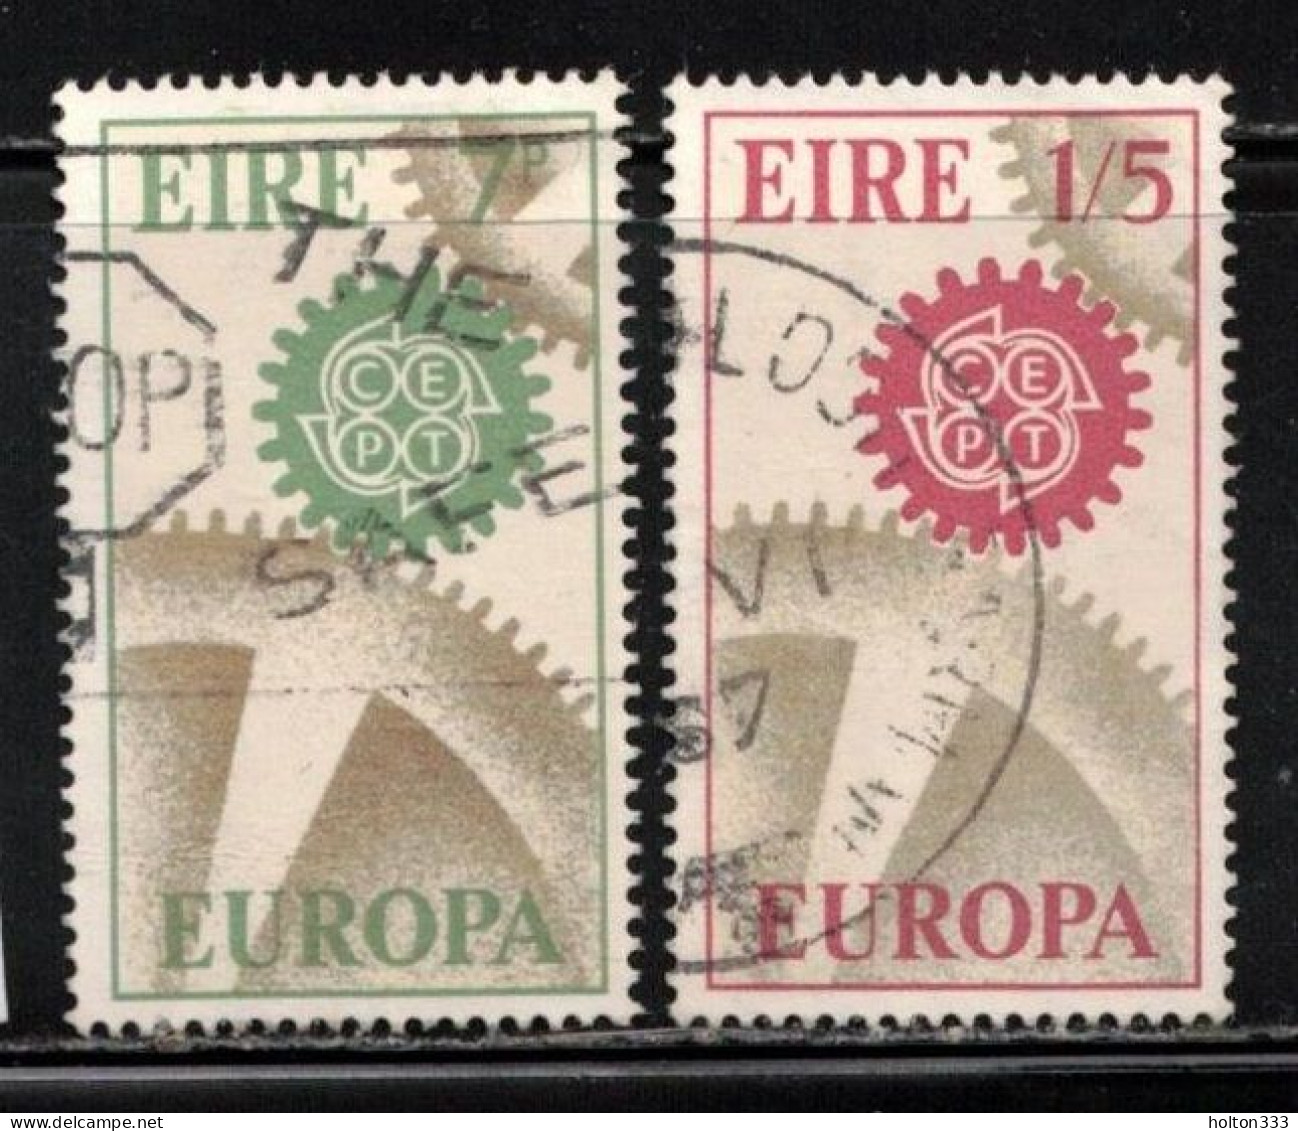 IRELAND Scott # 232-3 Used - 1967 Europa Issue B - Unused Stamps